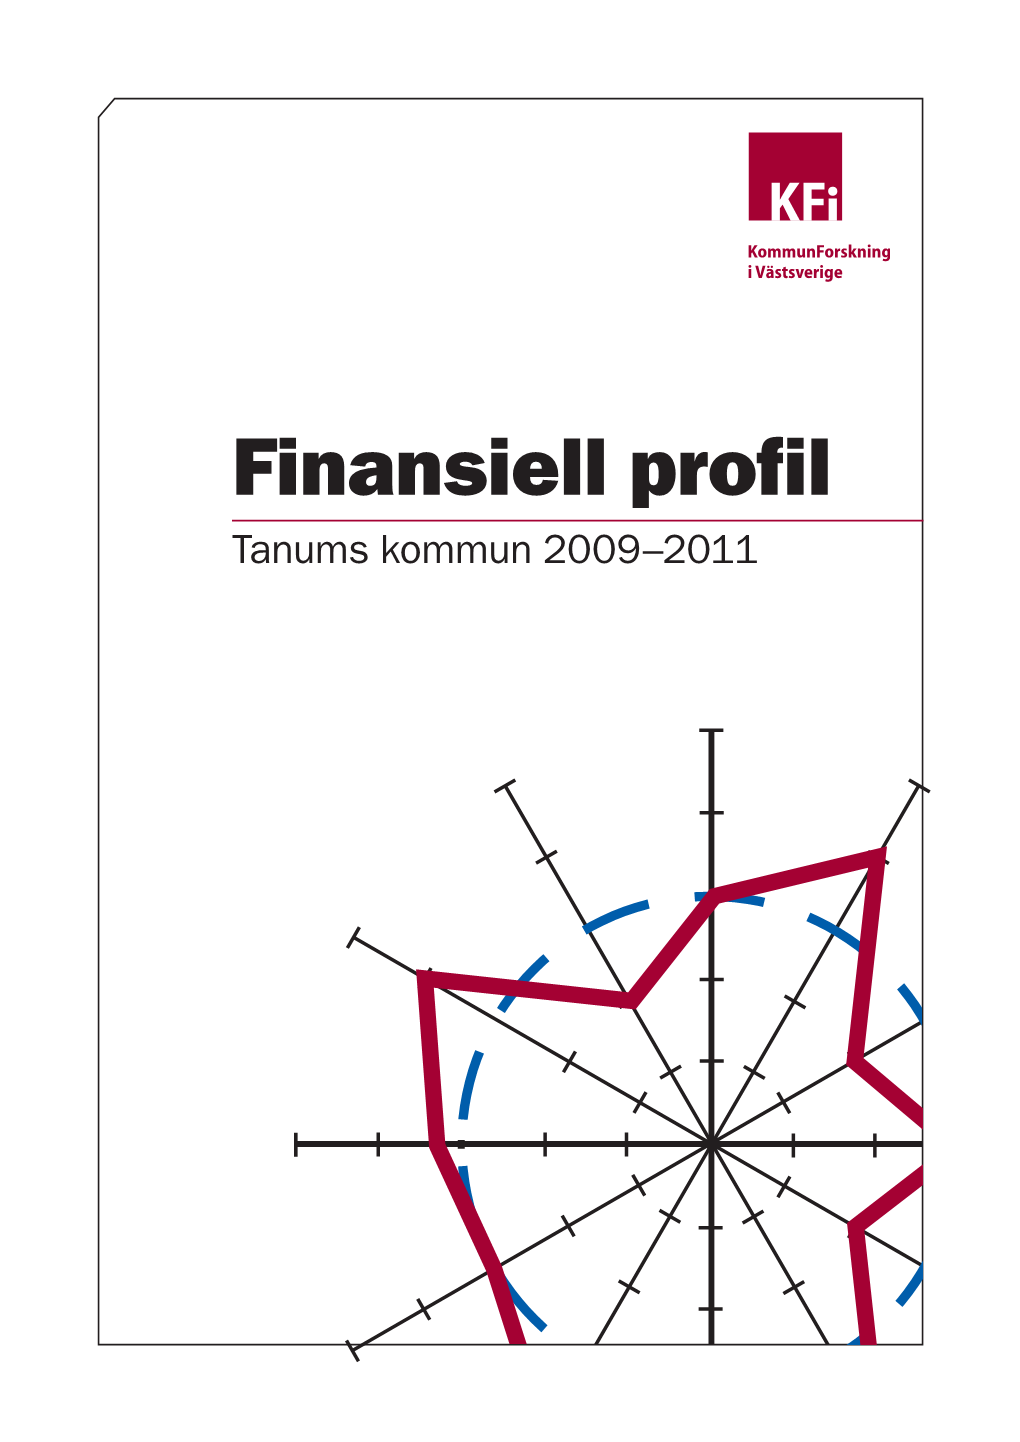 Finansiell Profil 2009-2011